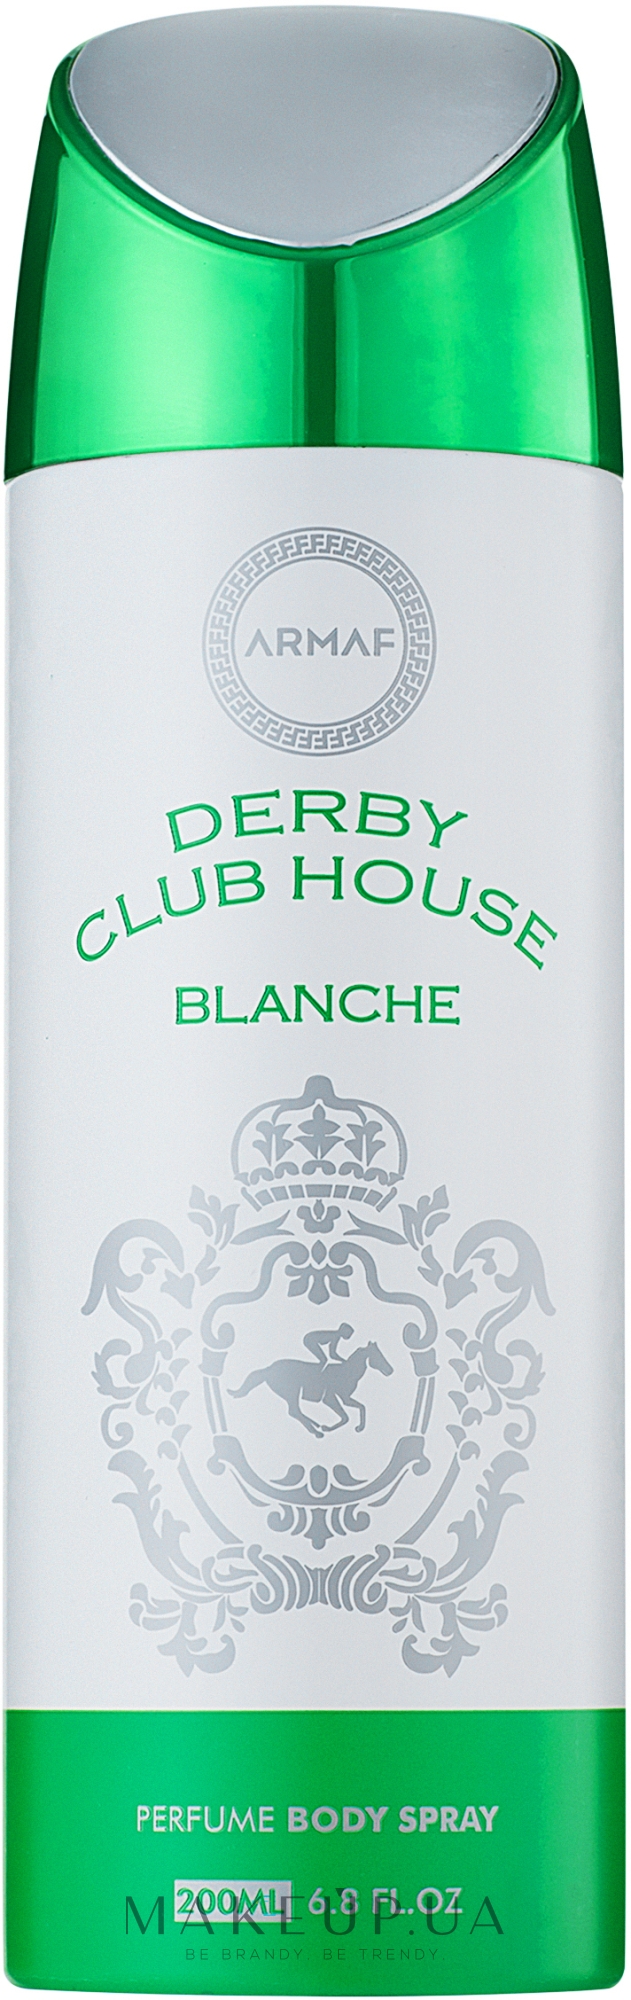 Armaf Derby Club House Blanche - Парфюмированный дезодорант-спрей для тела — фото 200ml